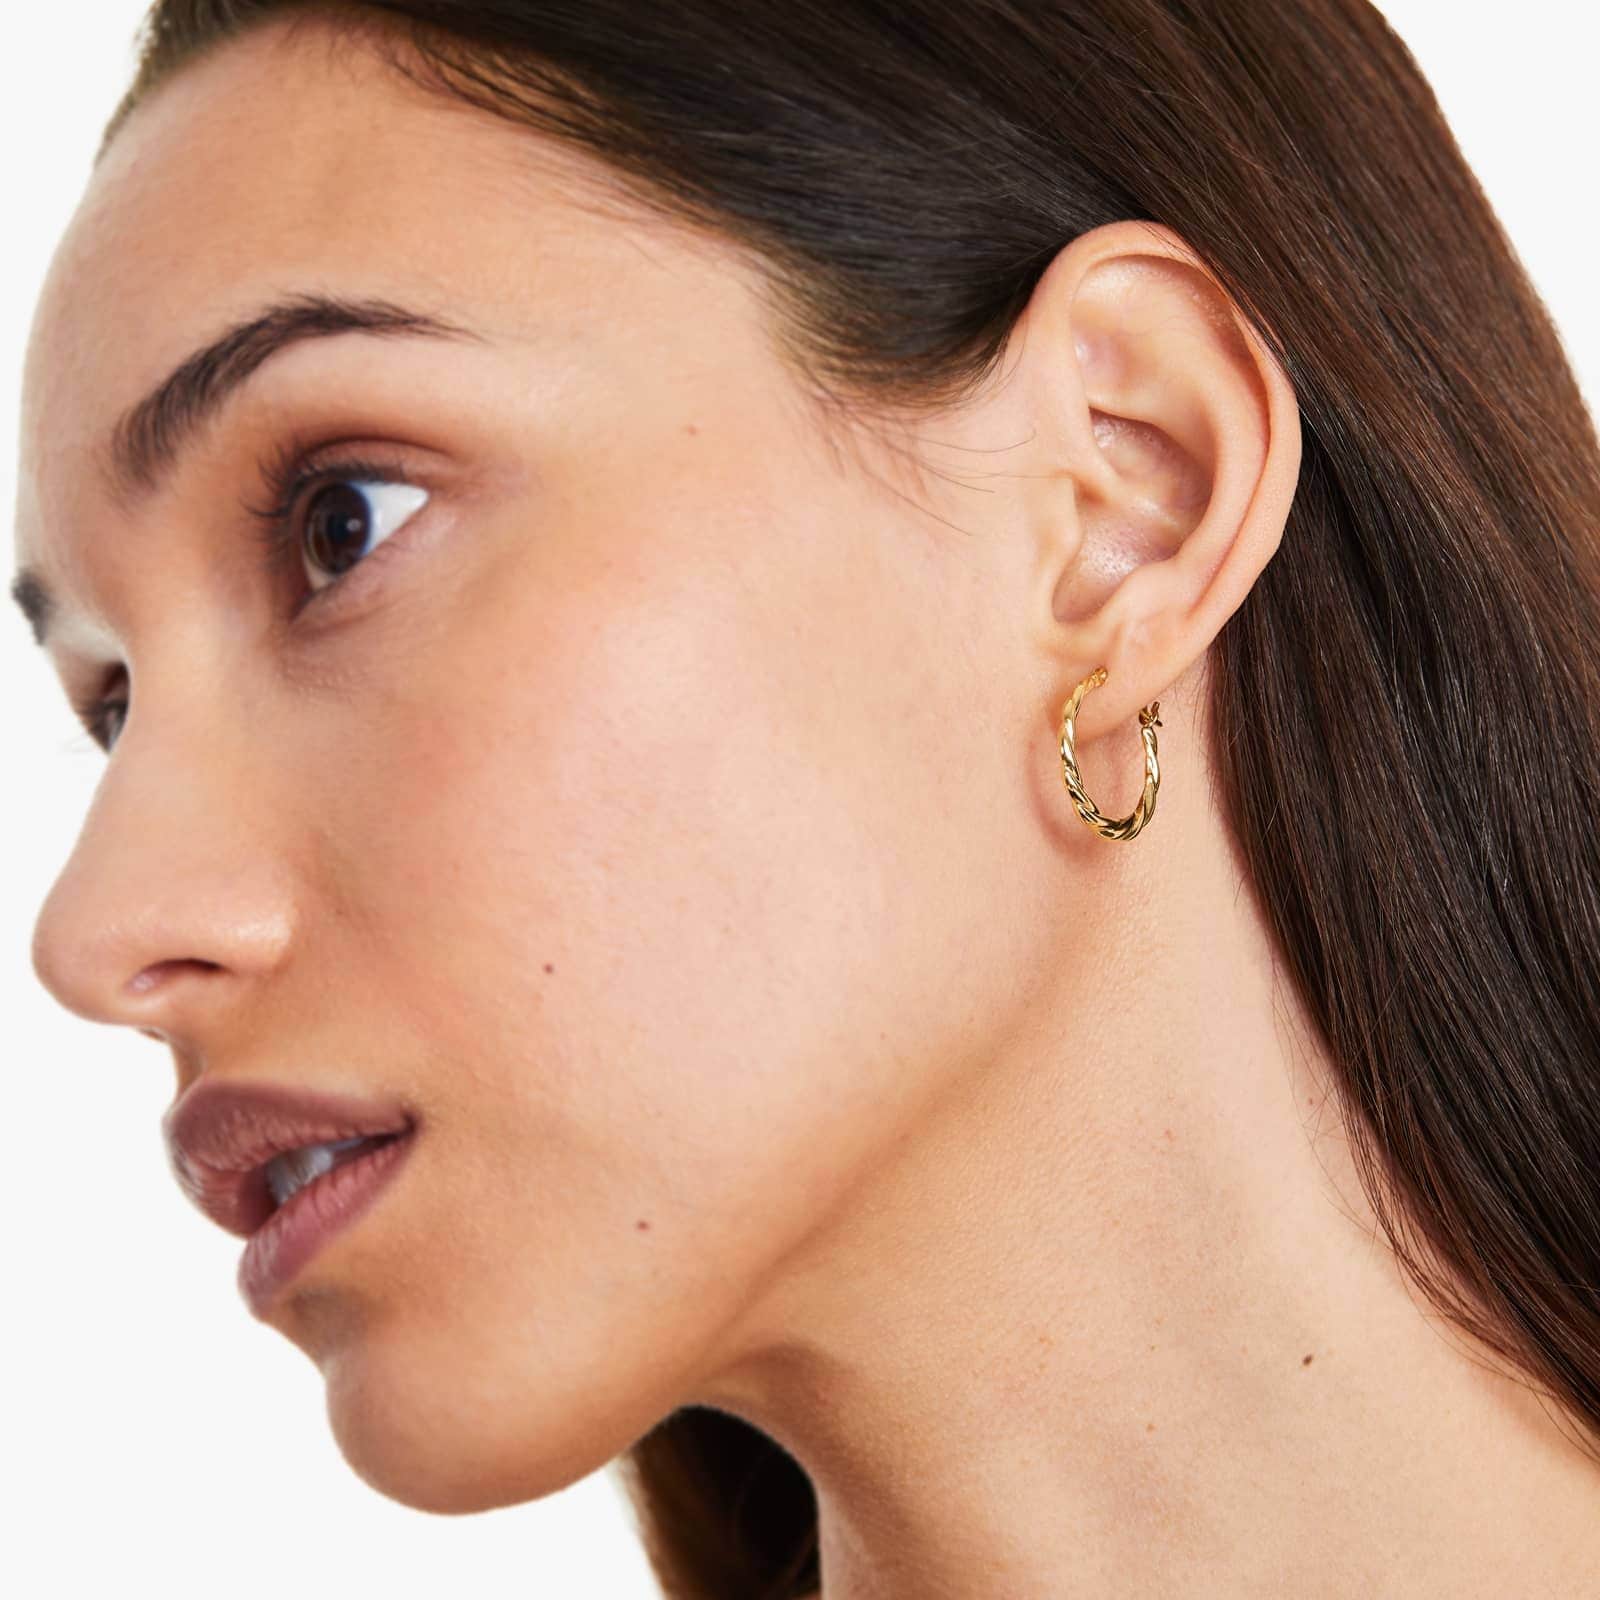 gold woven hoop earring on the woman's ear